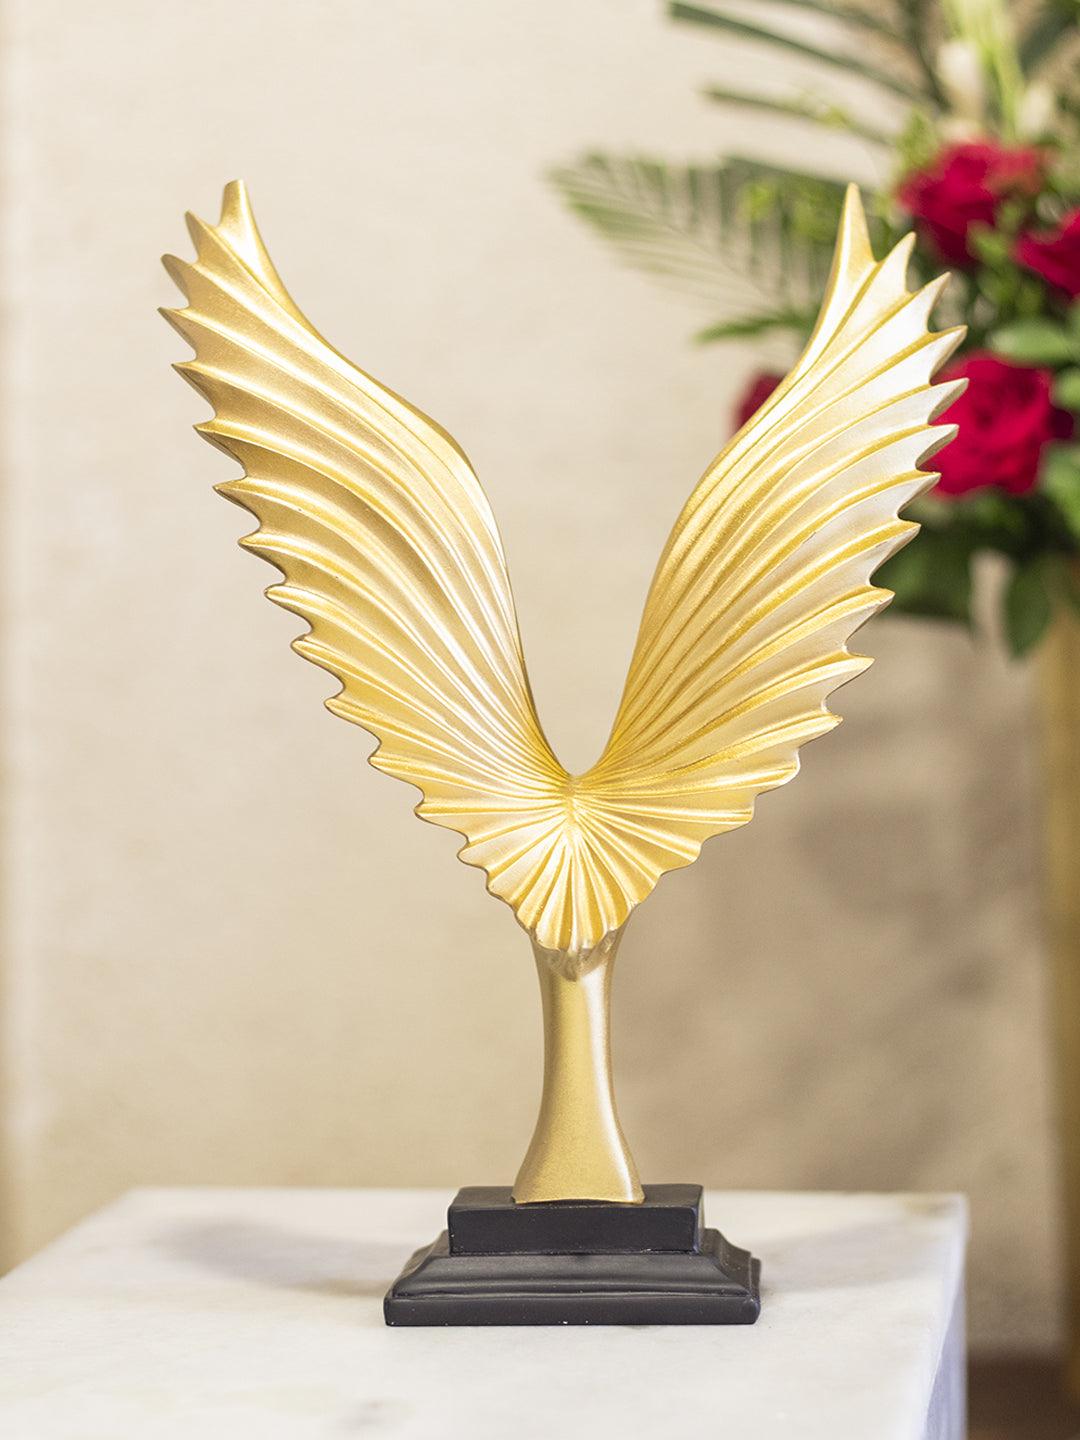 Decorative Golden Wings Statue Home & Office Décor 22CM - 1